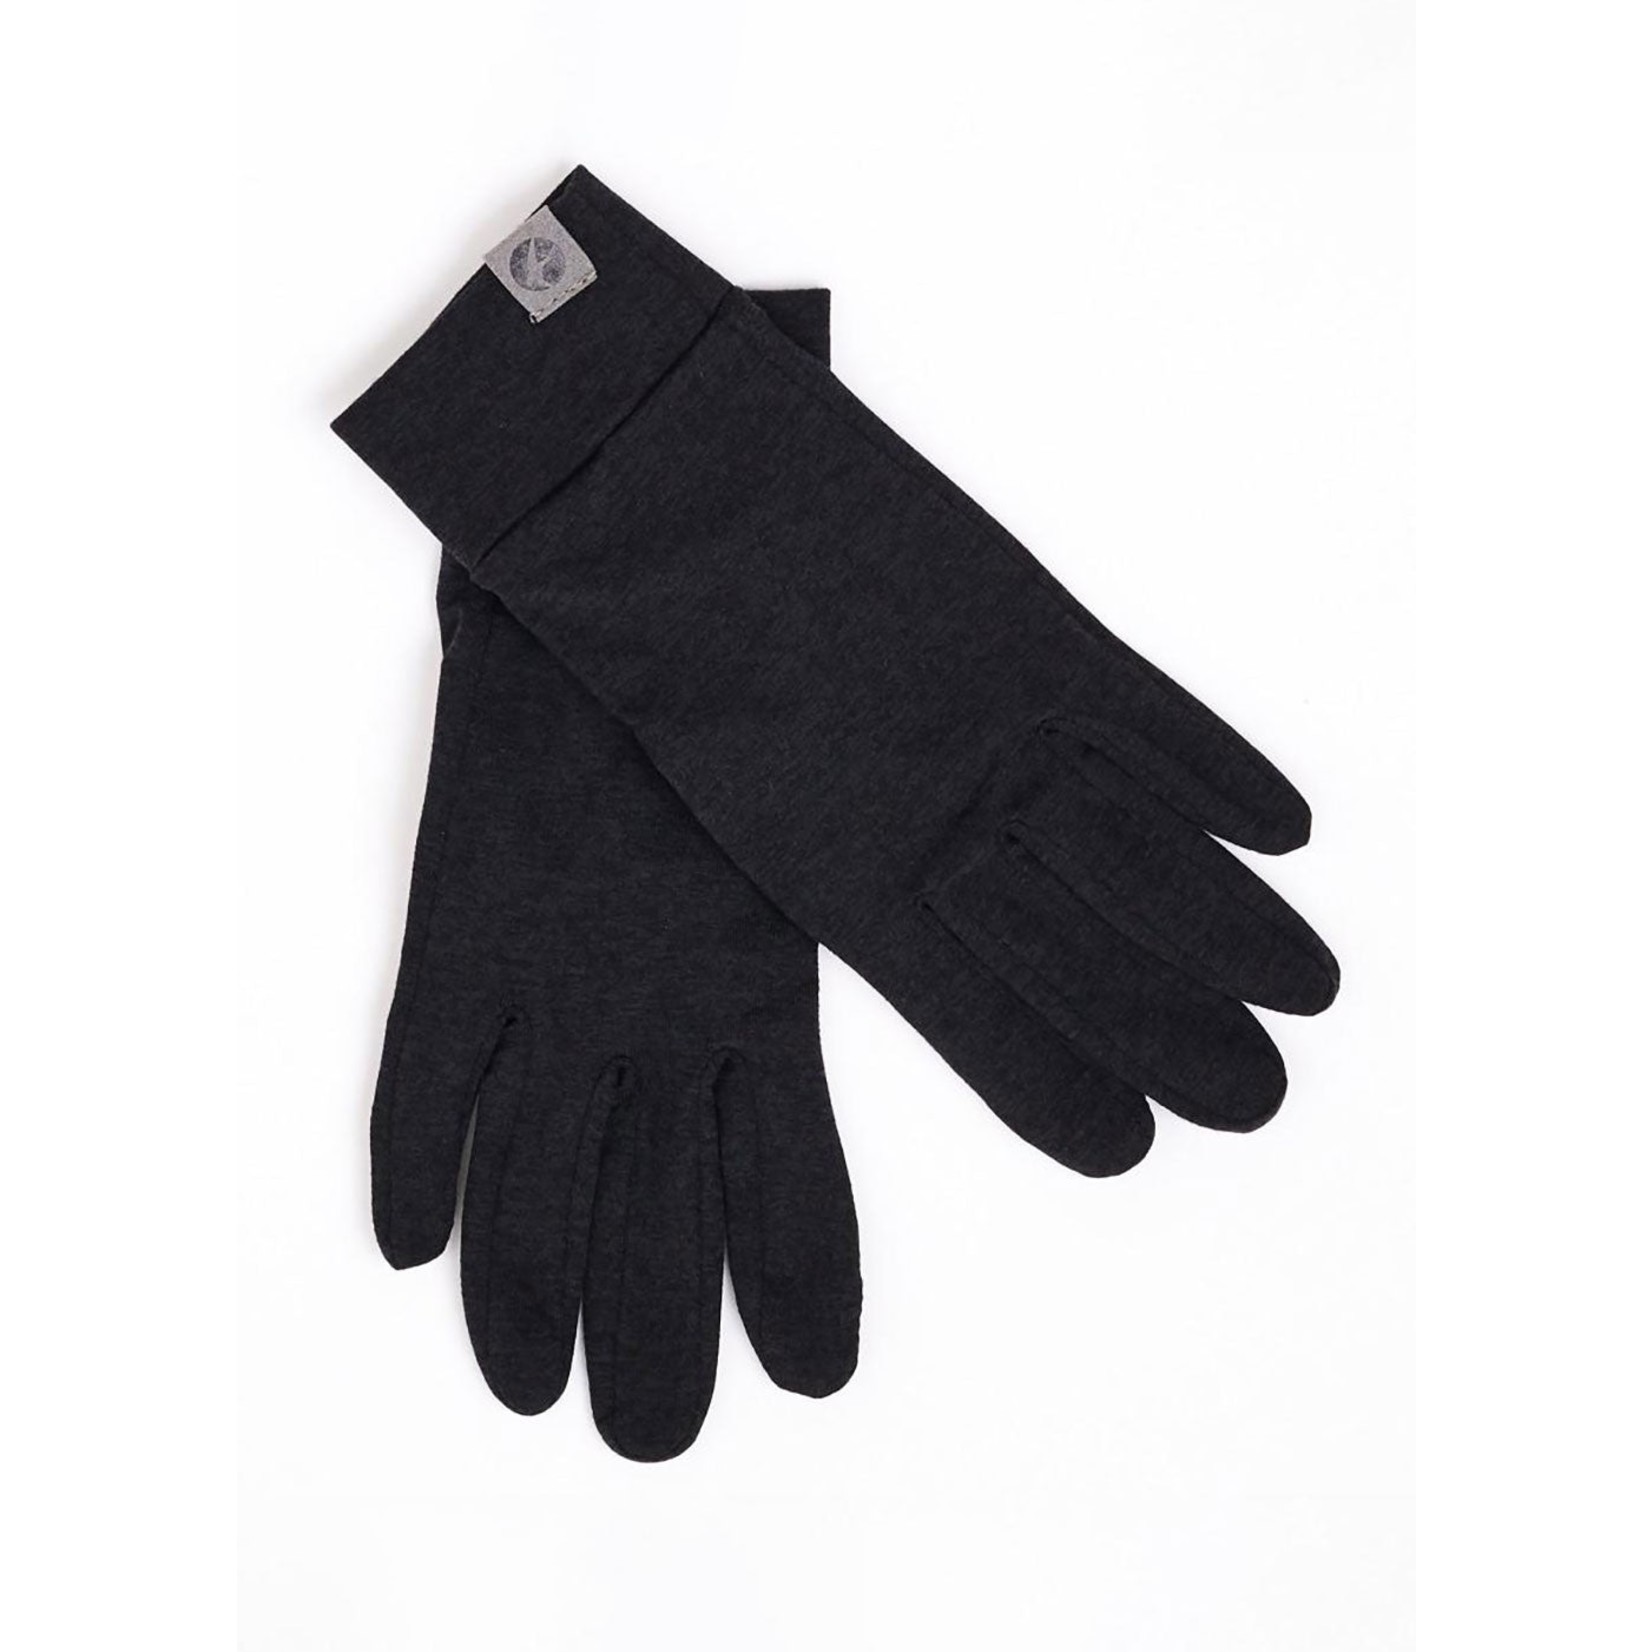 Oiselle Lux Gloves Black Women's